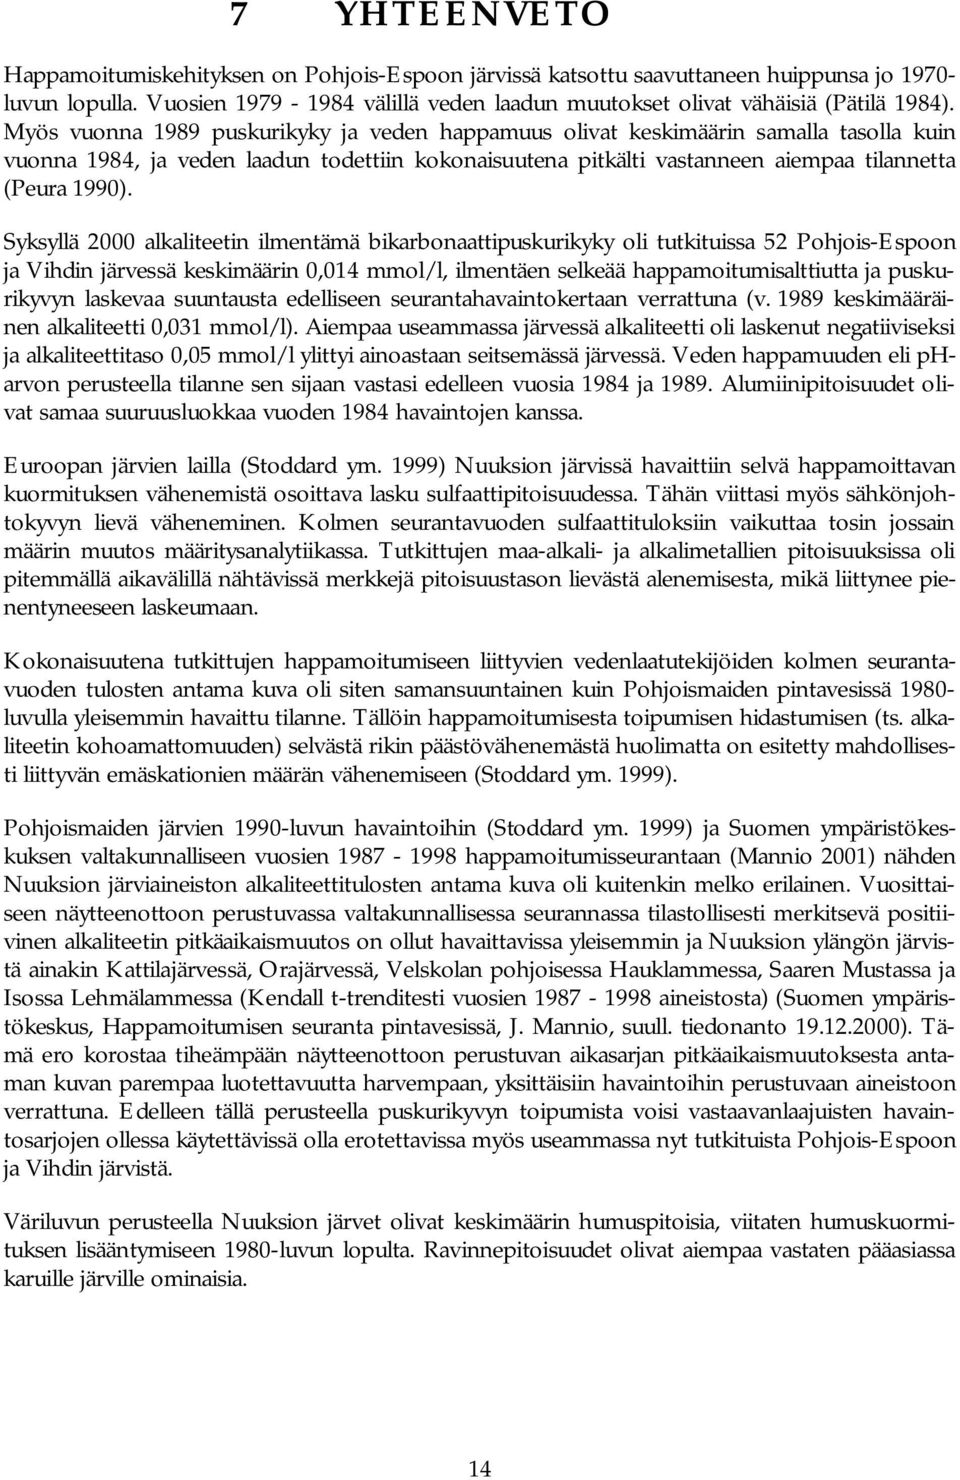 Syksyllä 2000 alkaliteetin ilmentämä bikarbonaattipuskurikyky oli tutkituissa 52 Pohjois-Espoon ja Vihdin järvessä keskimäärin 0,014 mmol/l, ilmentäen selkeää happamoitumisalttiutta ja puskurikyvyn